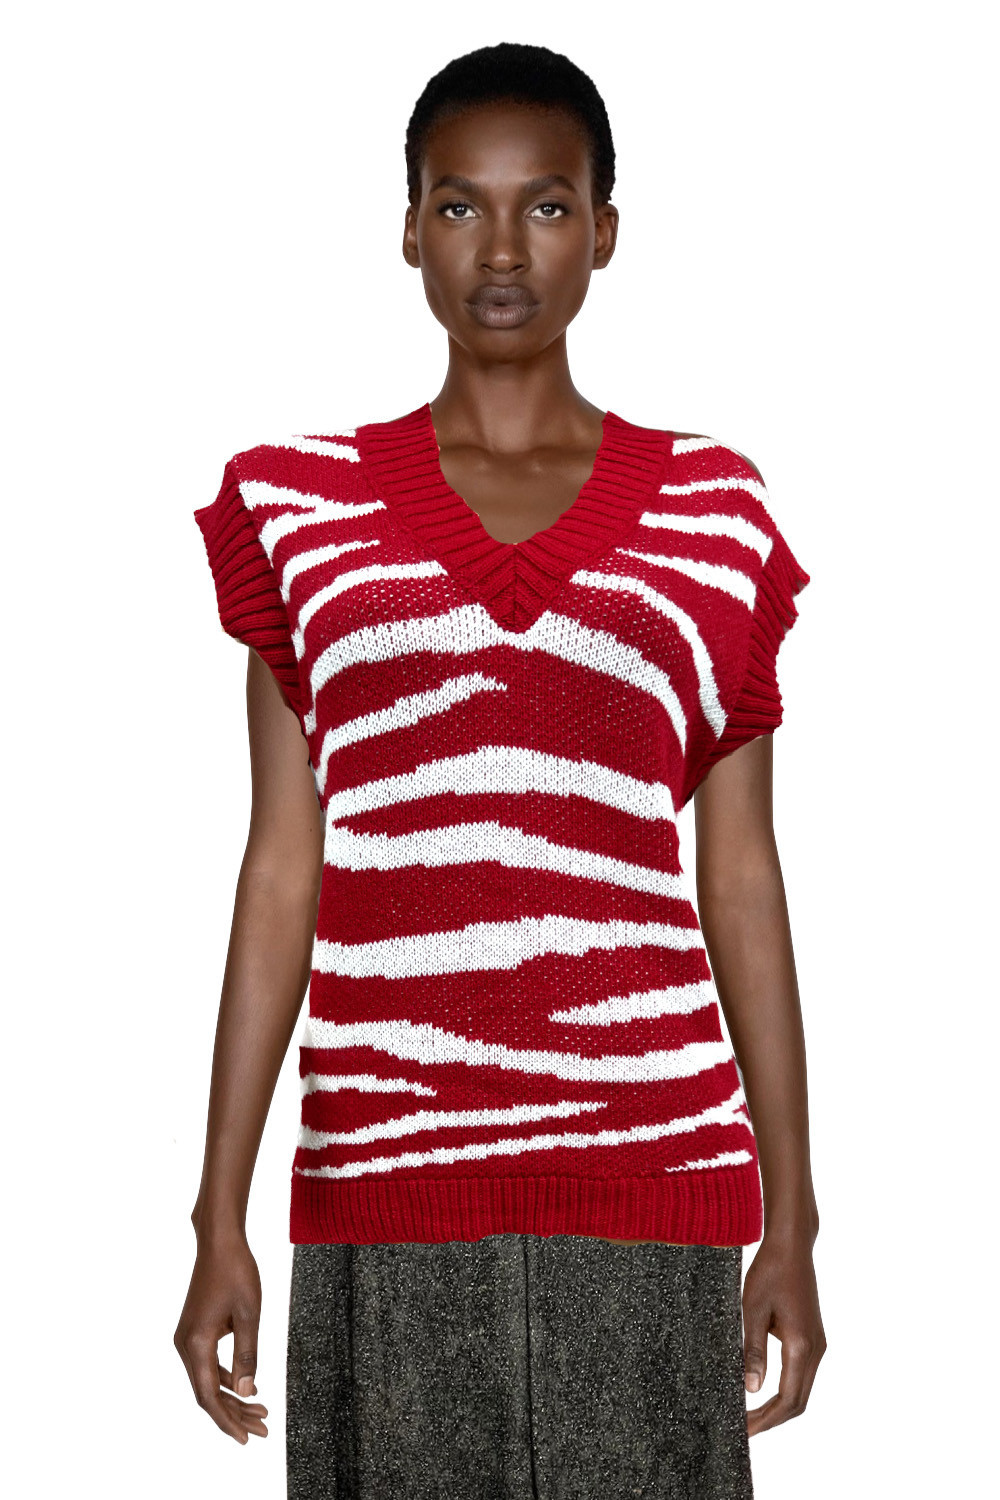 Loose sleeveless sweater - Online sale of women's ready-to-wear